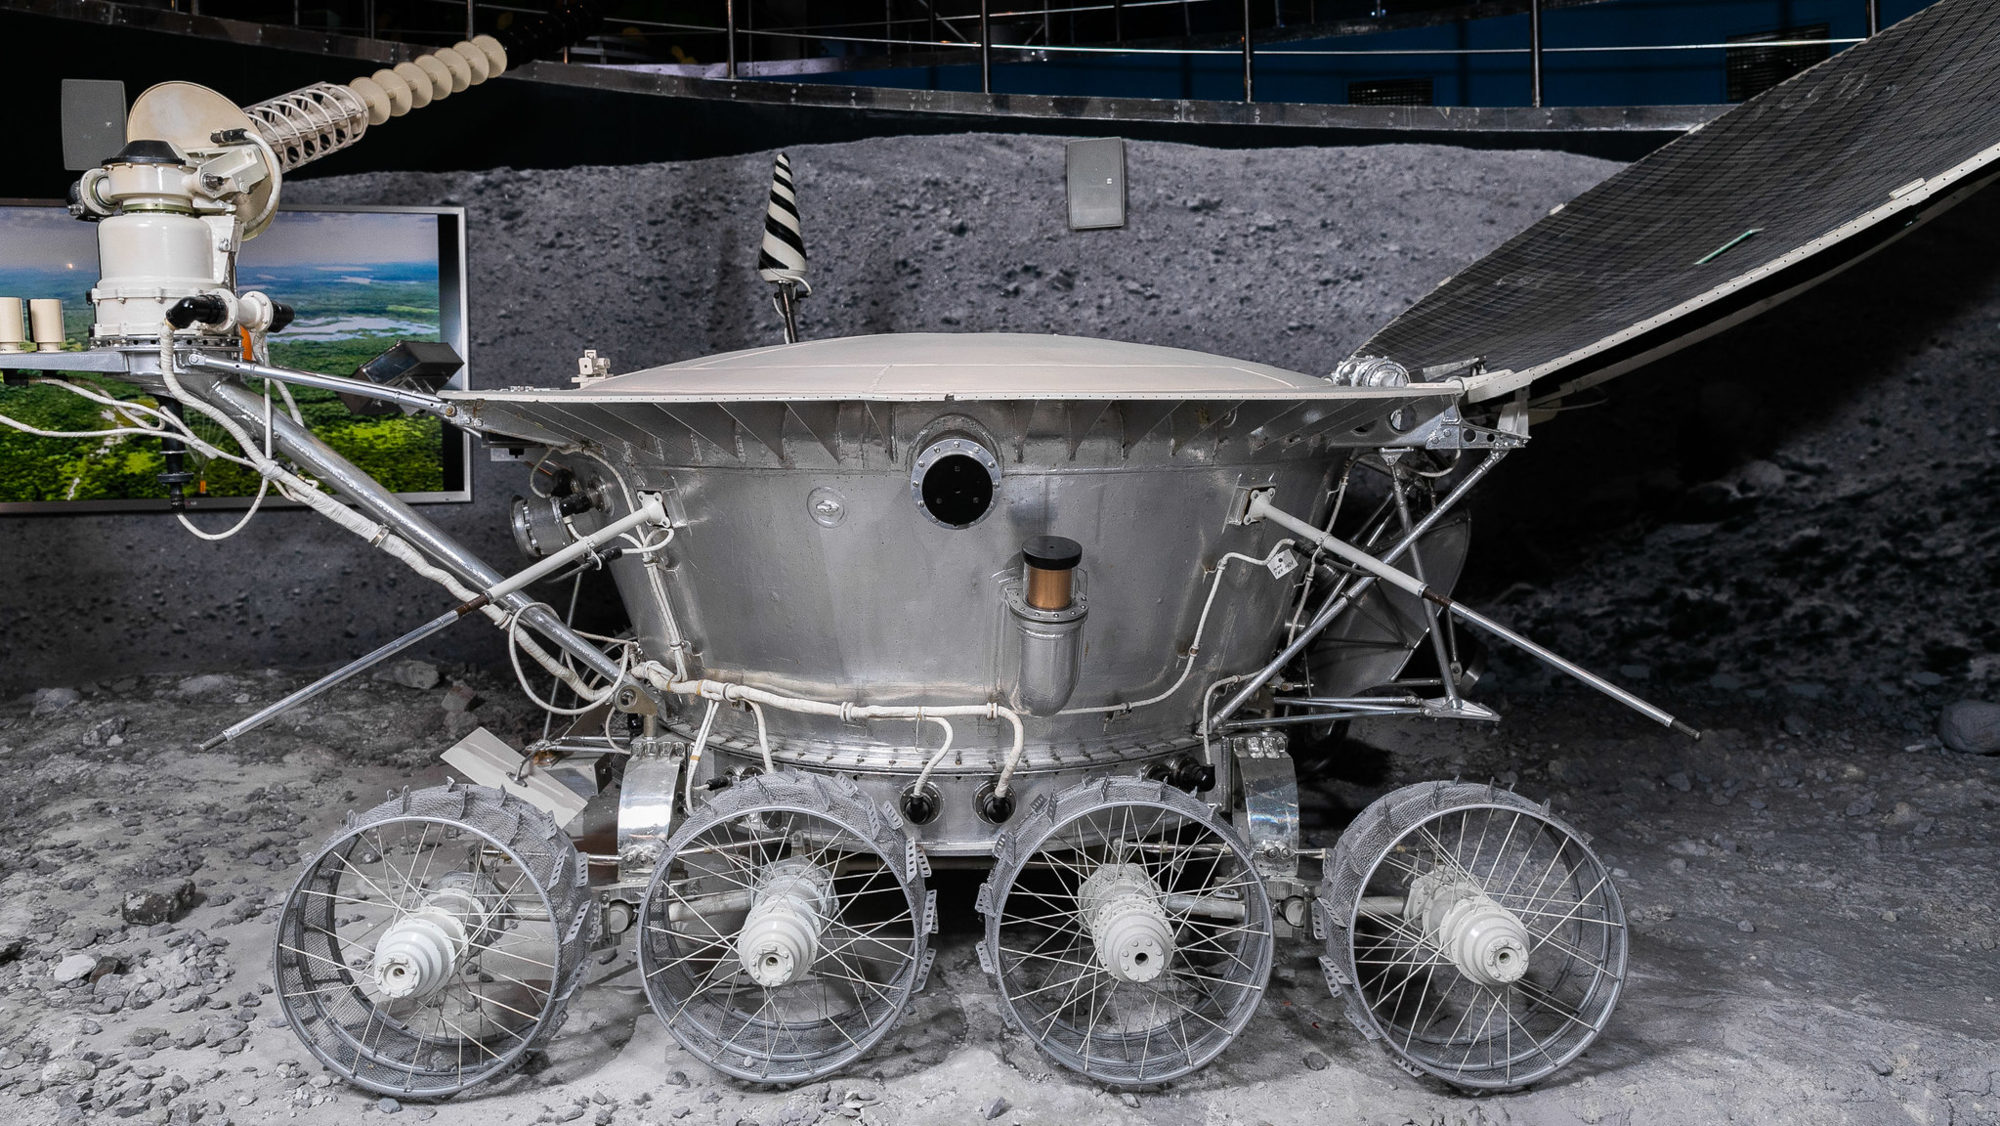 Онлайн-выставка «Музей космонавтики в деталях. Сторителлинг от лица экспонатов» – события на сайте «Московские Сезоны»